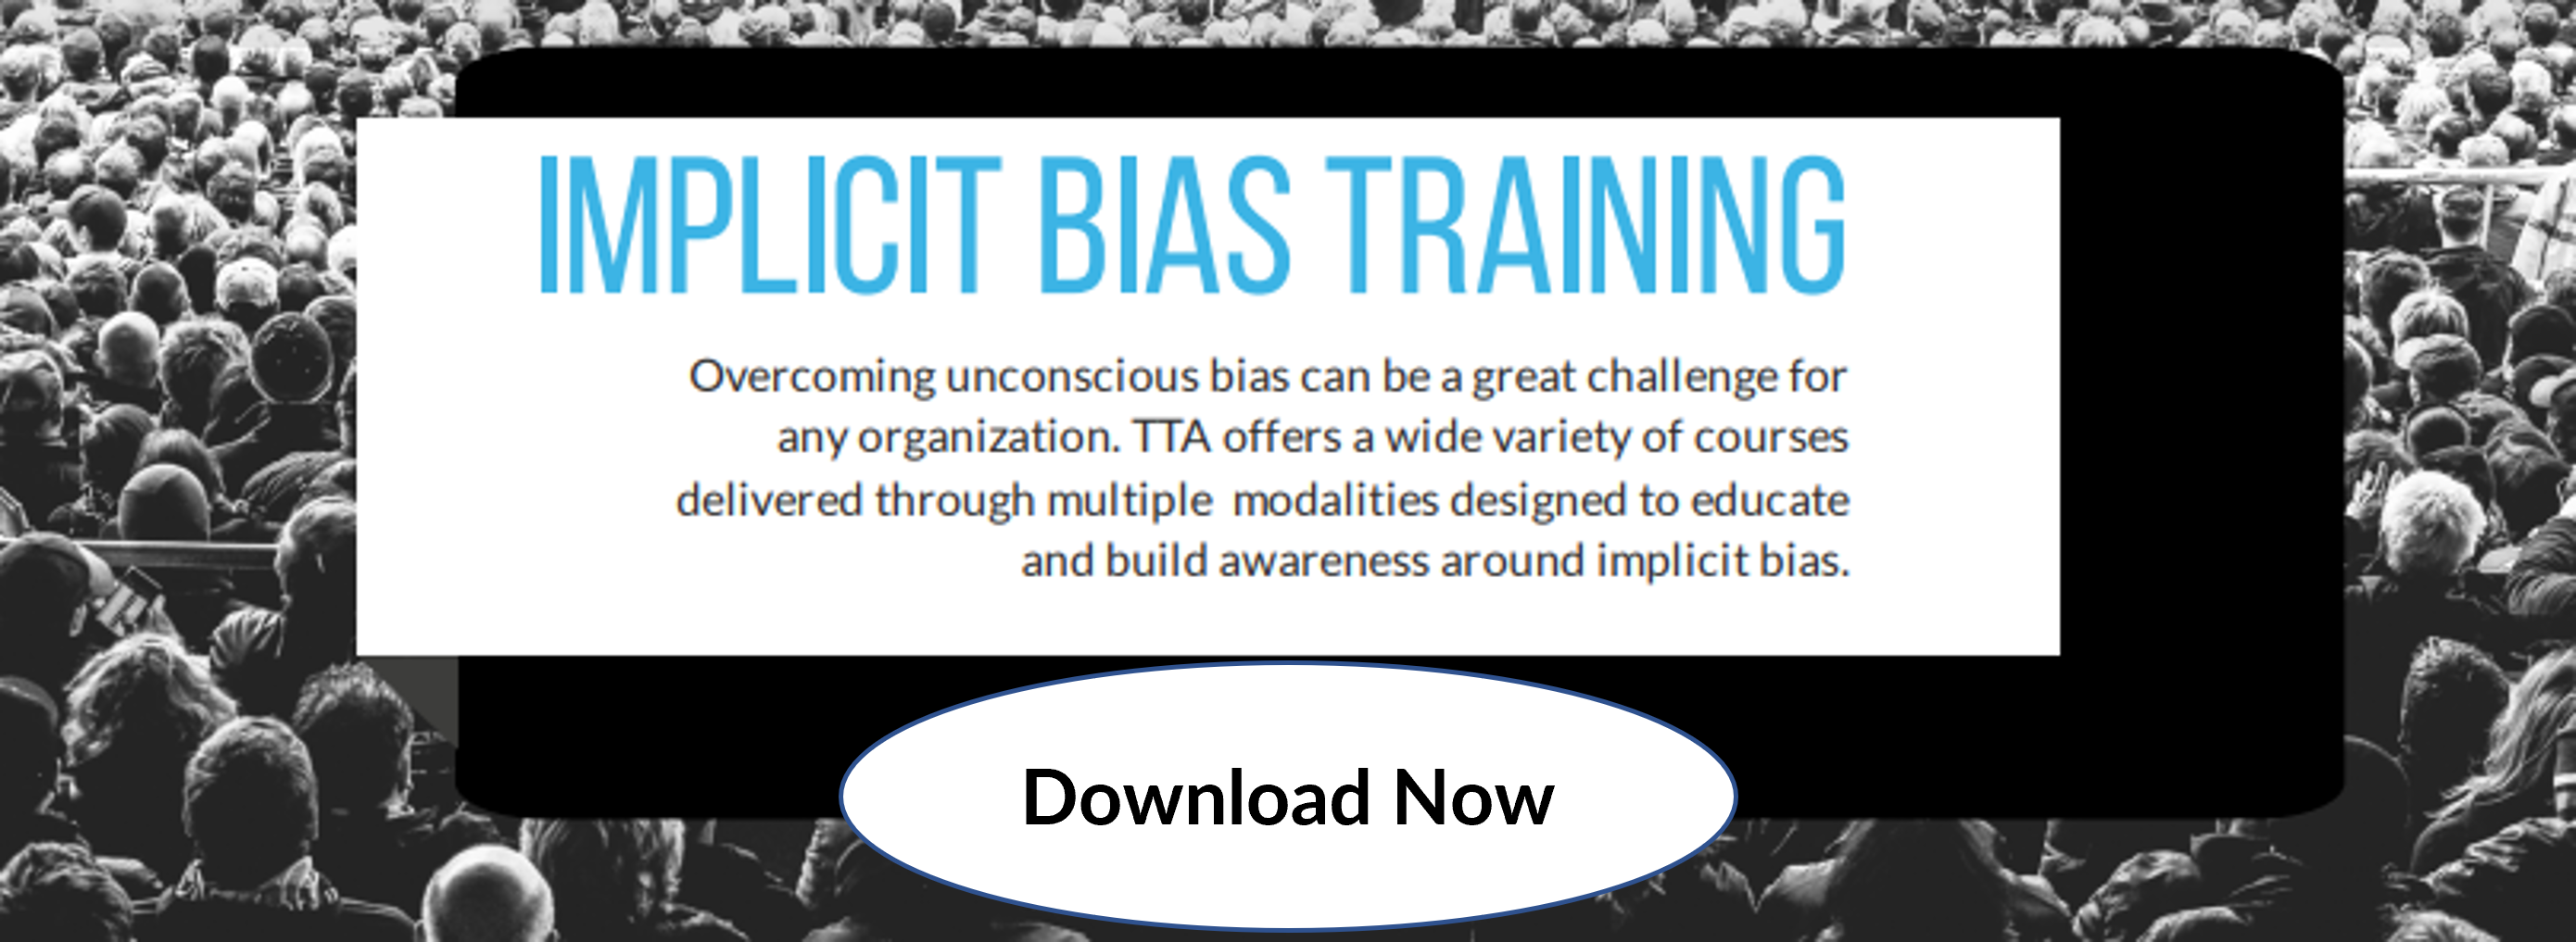 Implicit bias training infographic